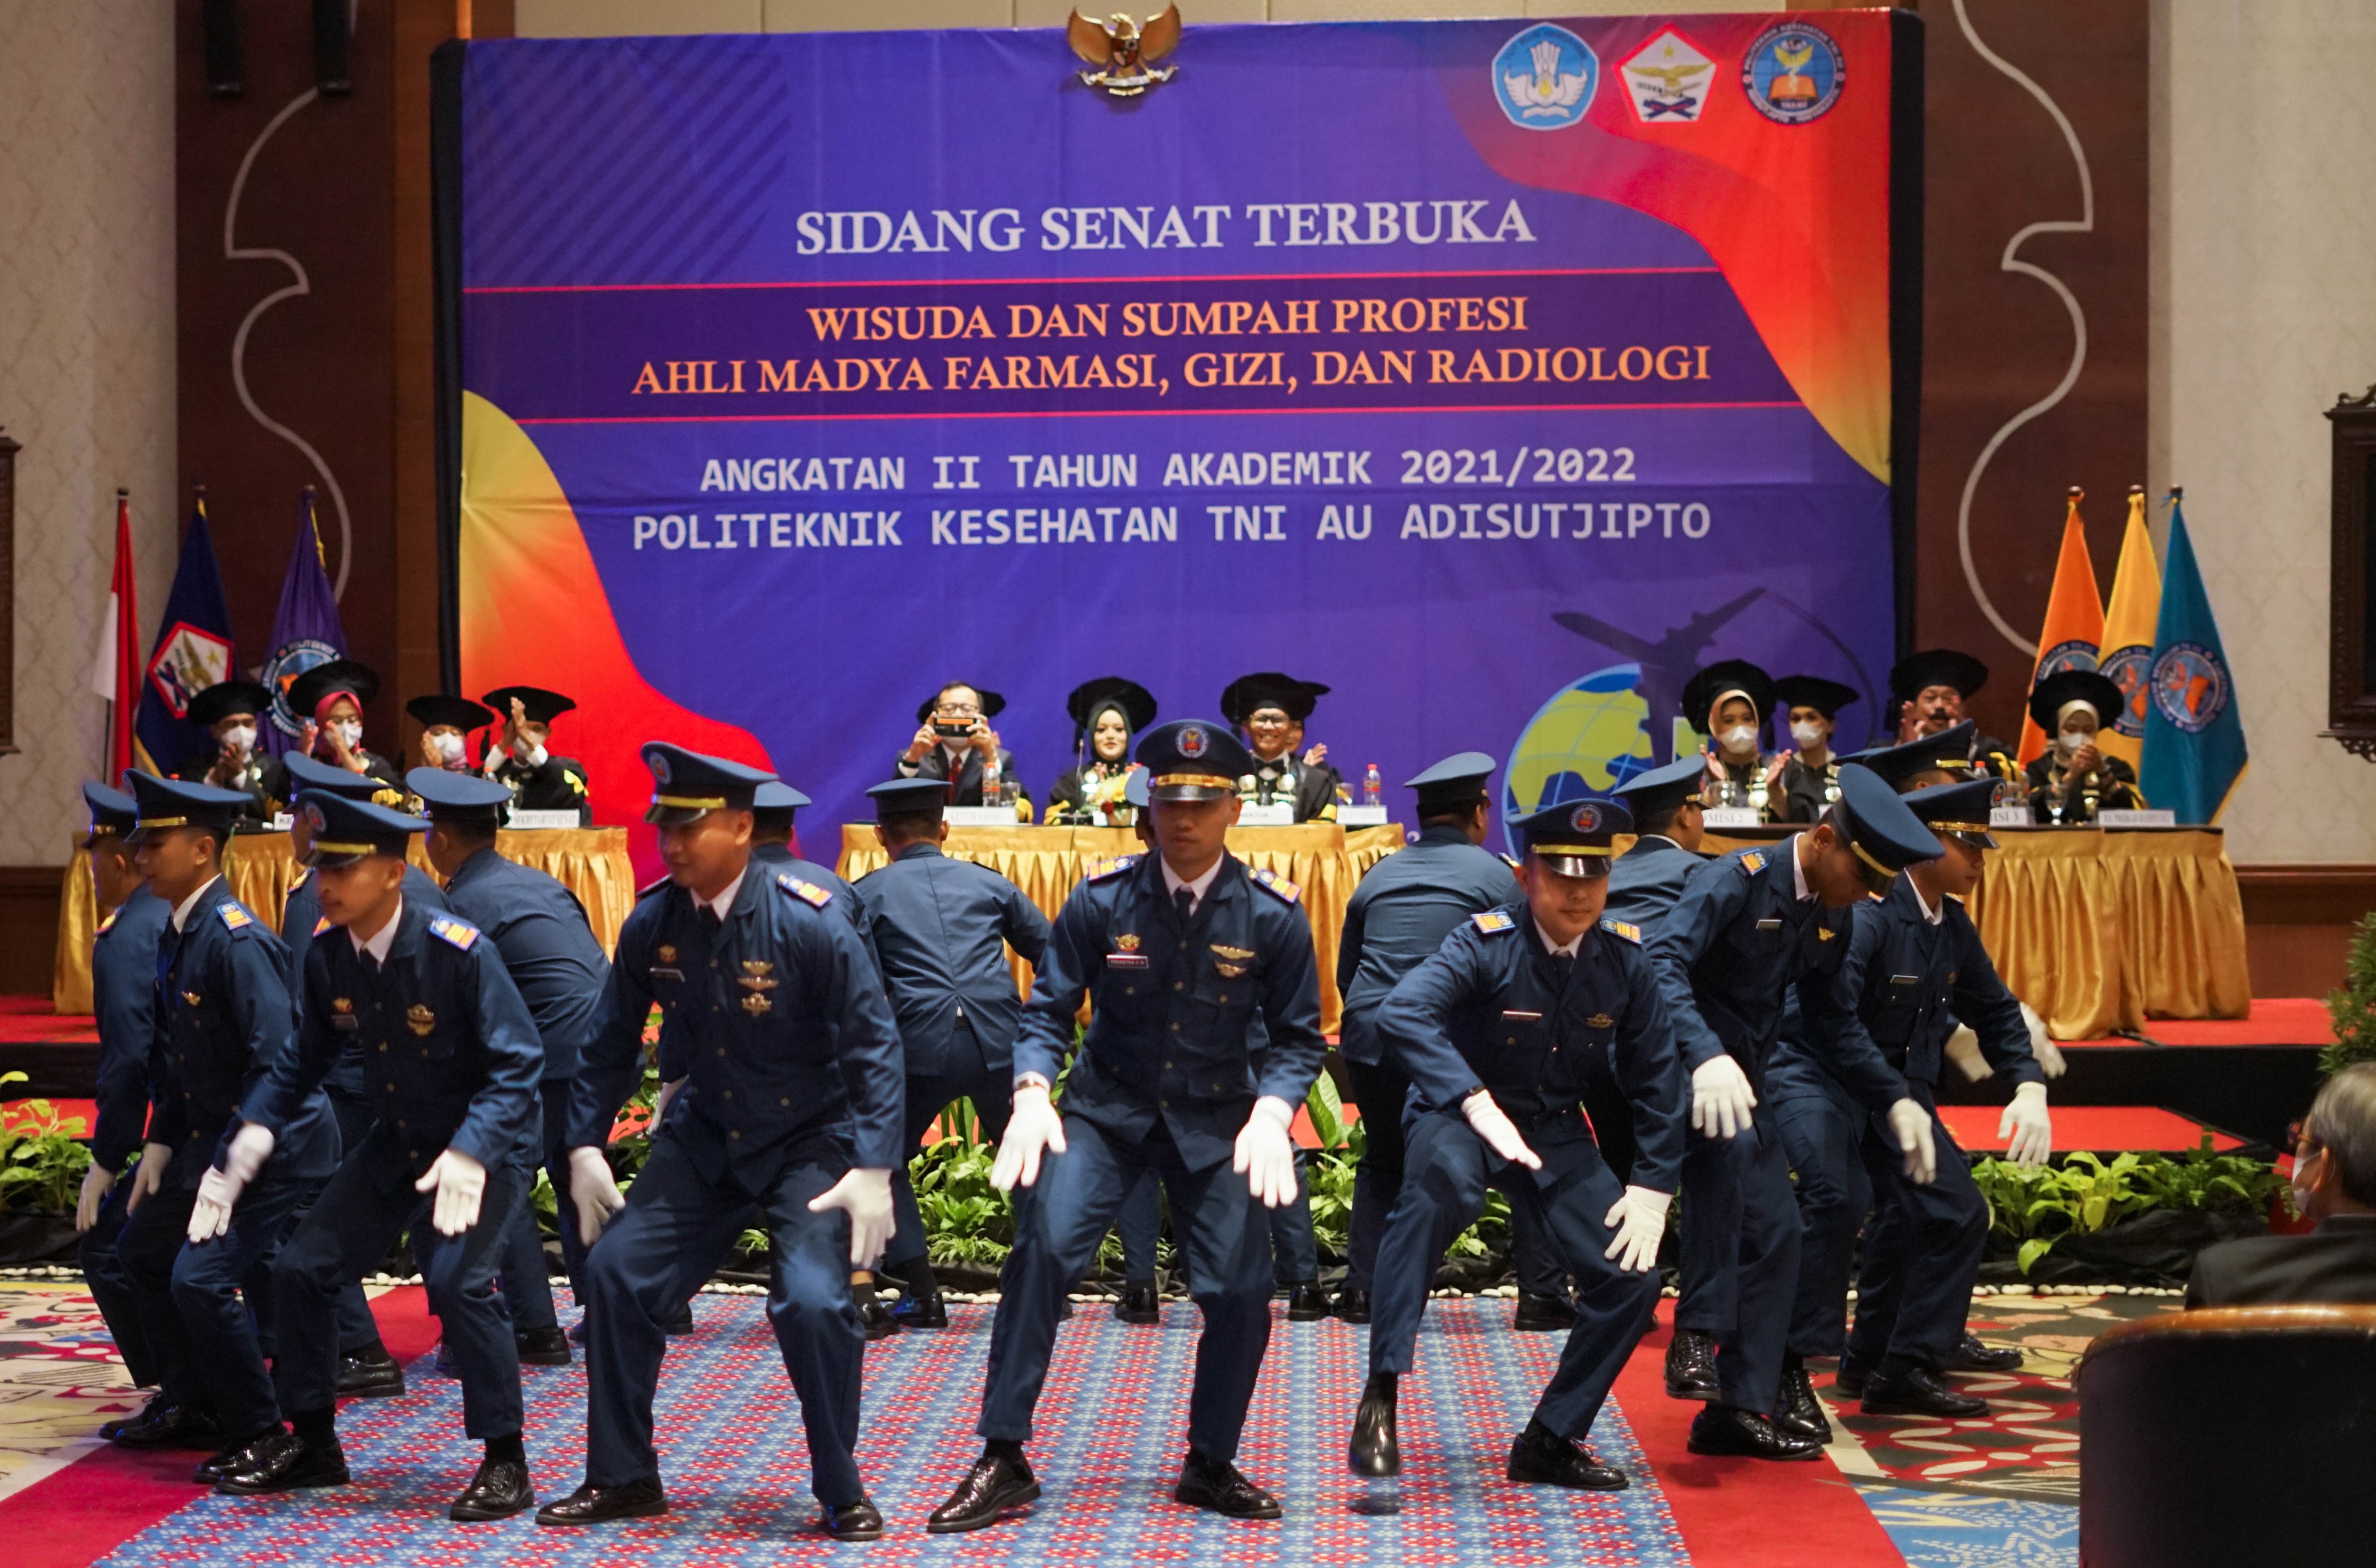 WISUDA KE-2 KAMPUS POLTEKKES TNI AU ADISUTJIPTO TAHUN AKADEMIK 2021/2022